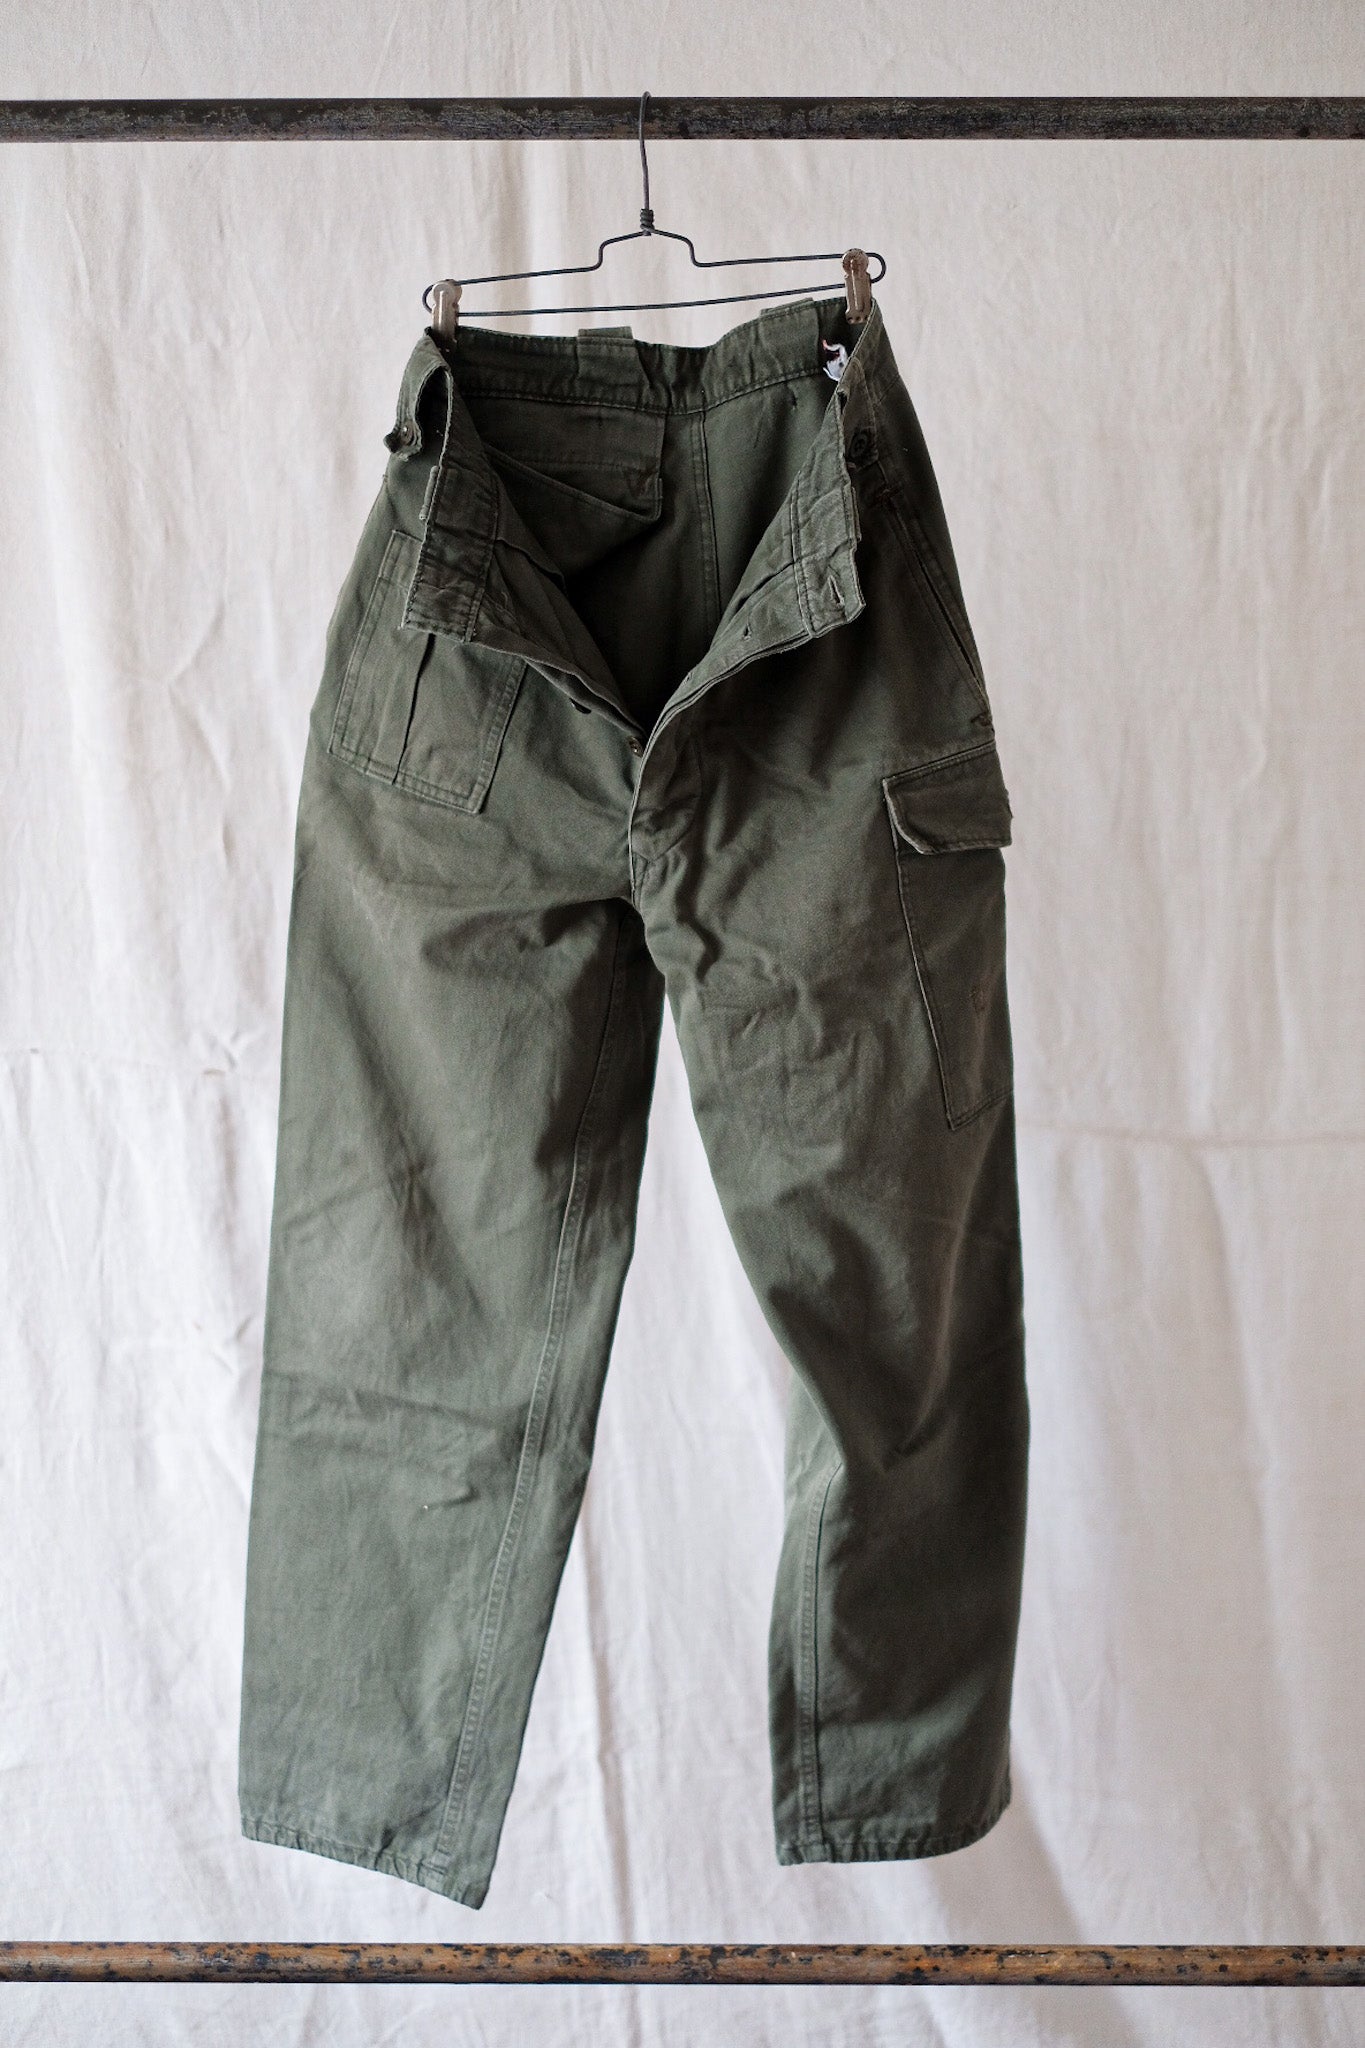 [〜80年代]比利時軍隊野外褲子